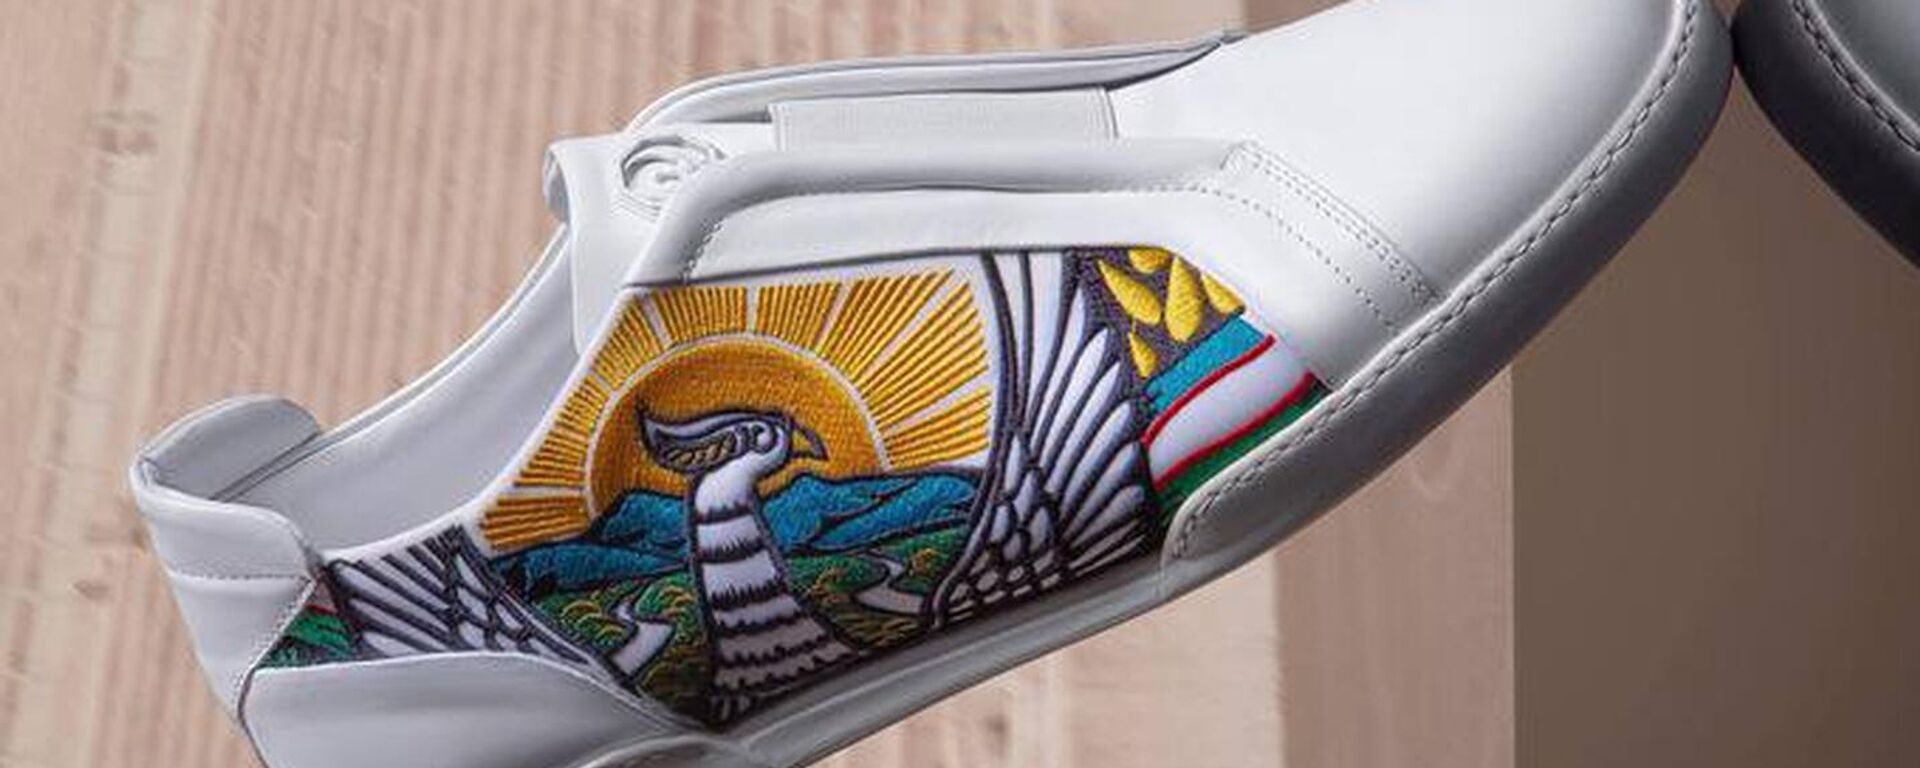 Коллекция обуви итальянского дизайнера Стефано Риччи с гербом Узбекистана - Sputnik Узбекистан, 1920, 30.07.2021